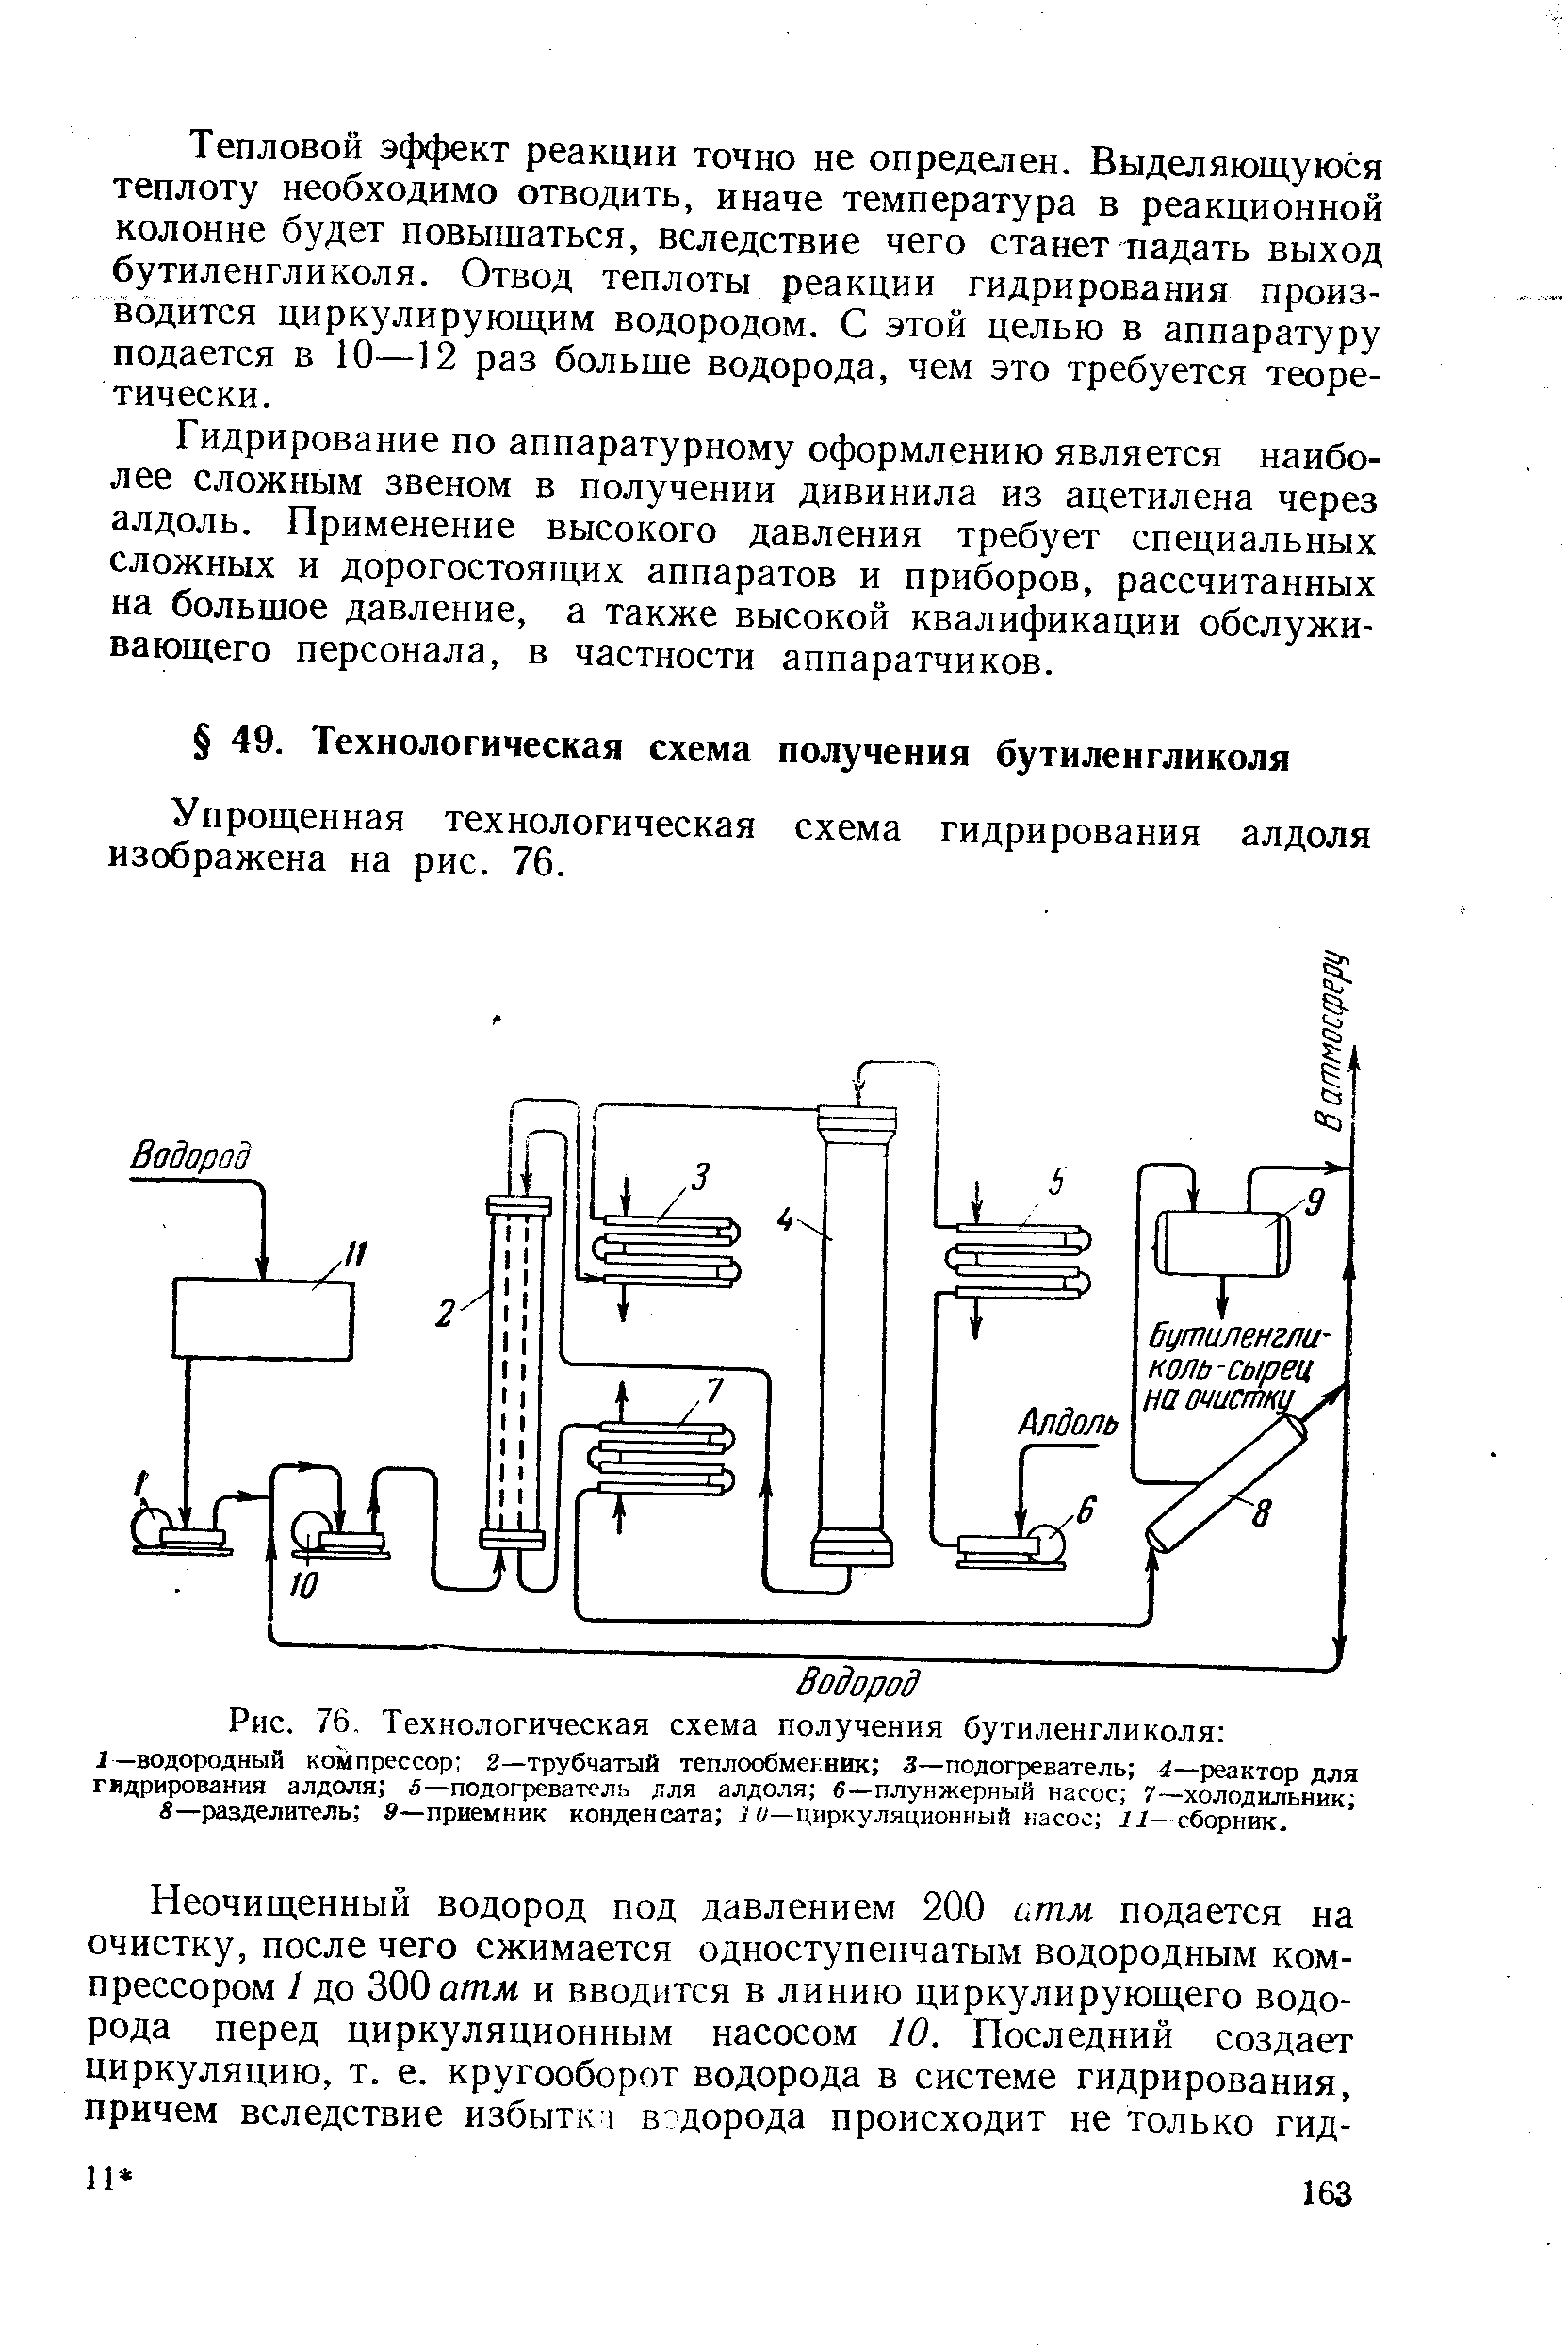 Упрощенная технологическая схема гидрирования алдоля изображена на рис. 76.